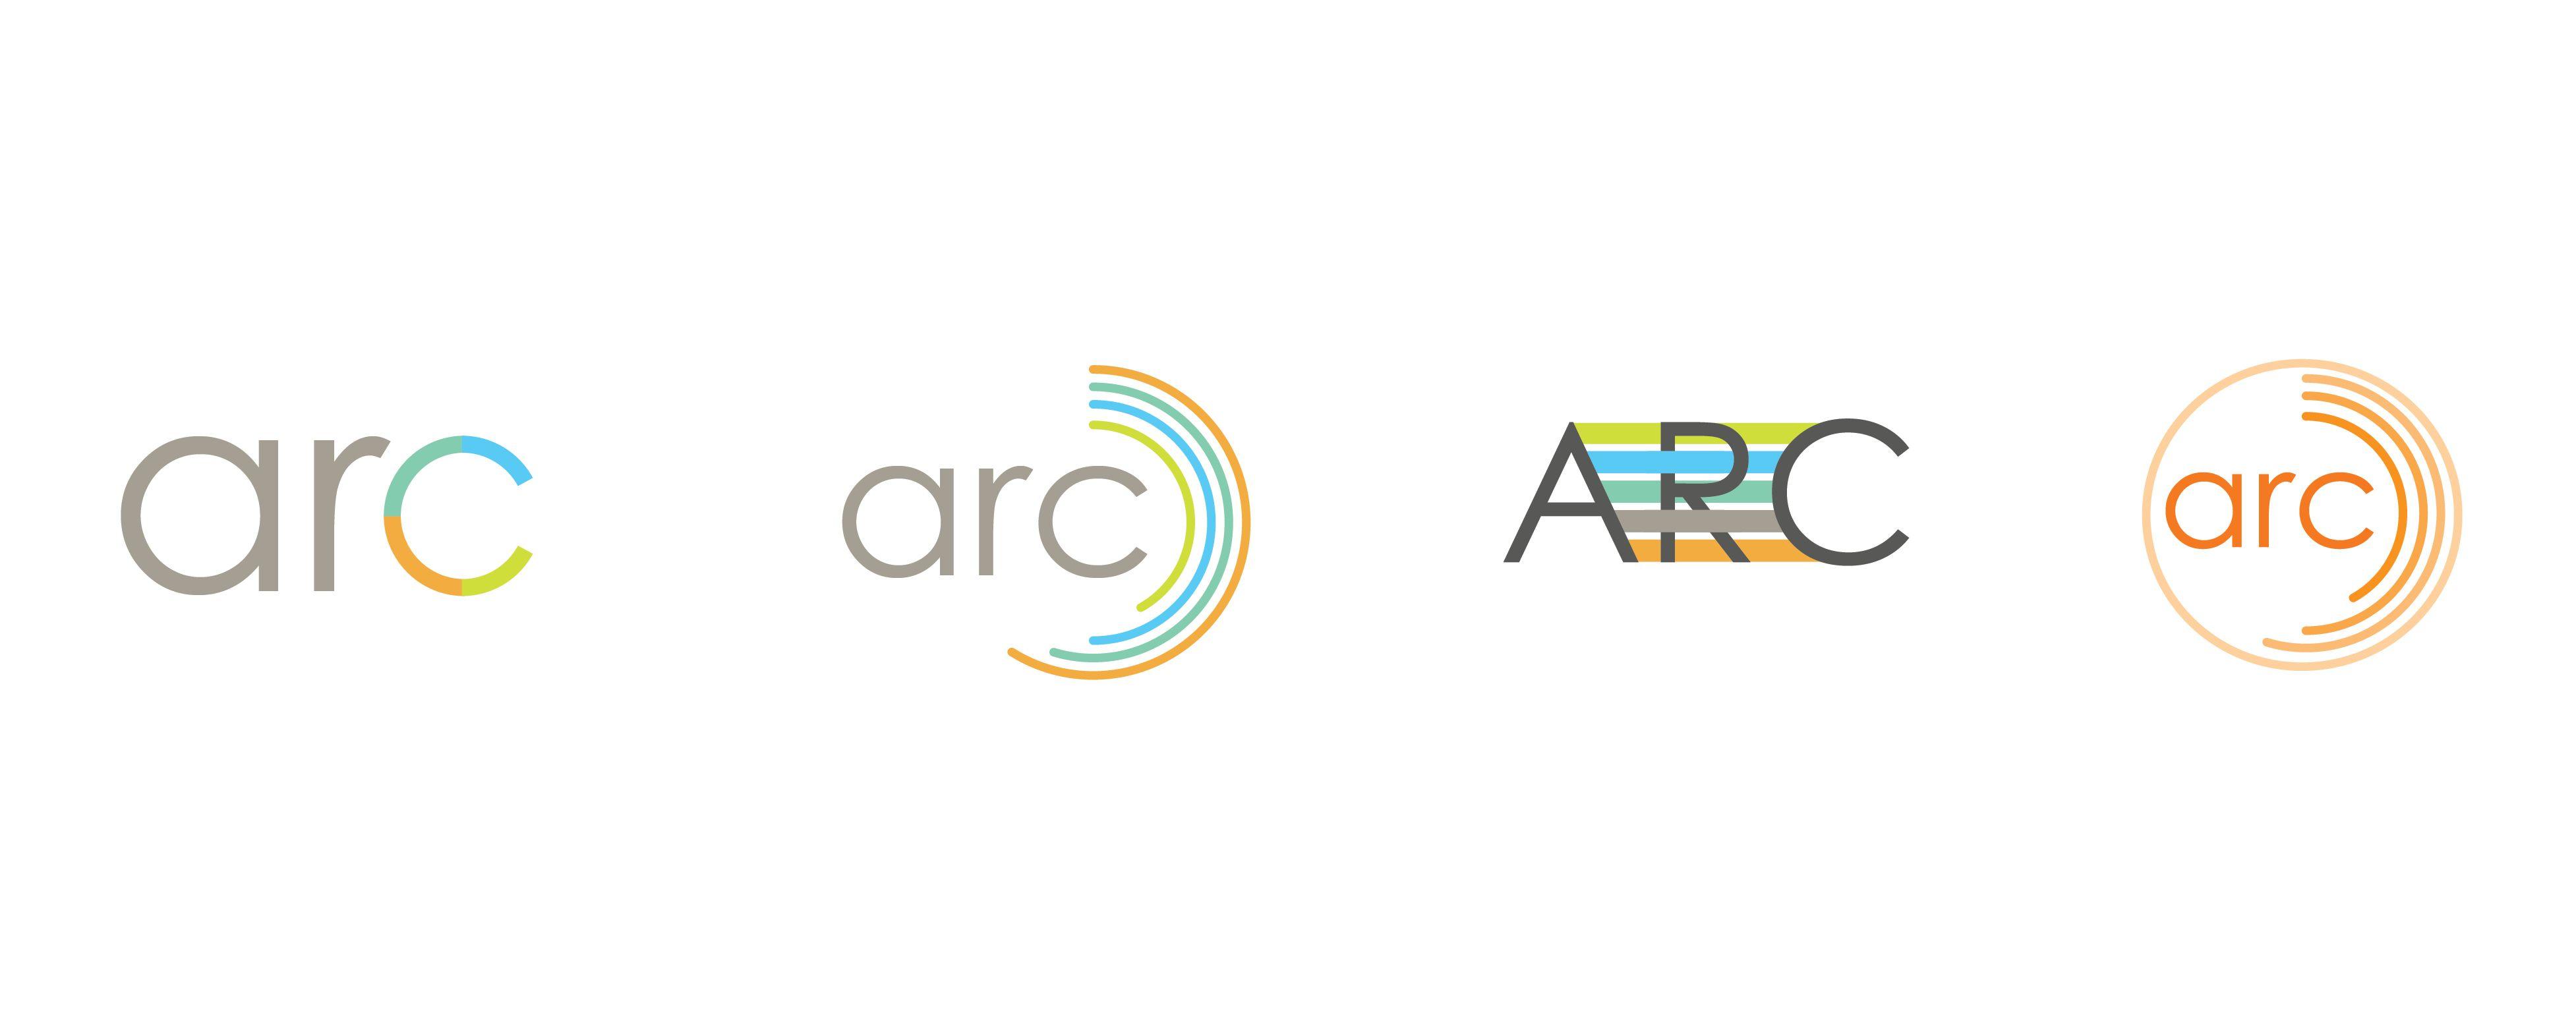 Arc Logo - Evolution of the Arc logo: Designing for a new brand | USGBC Studio